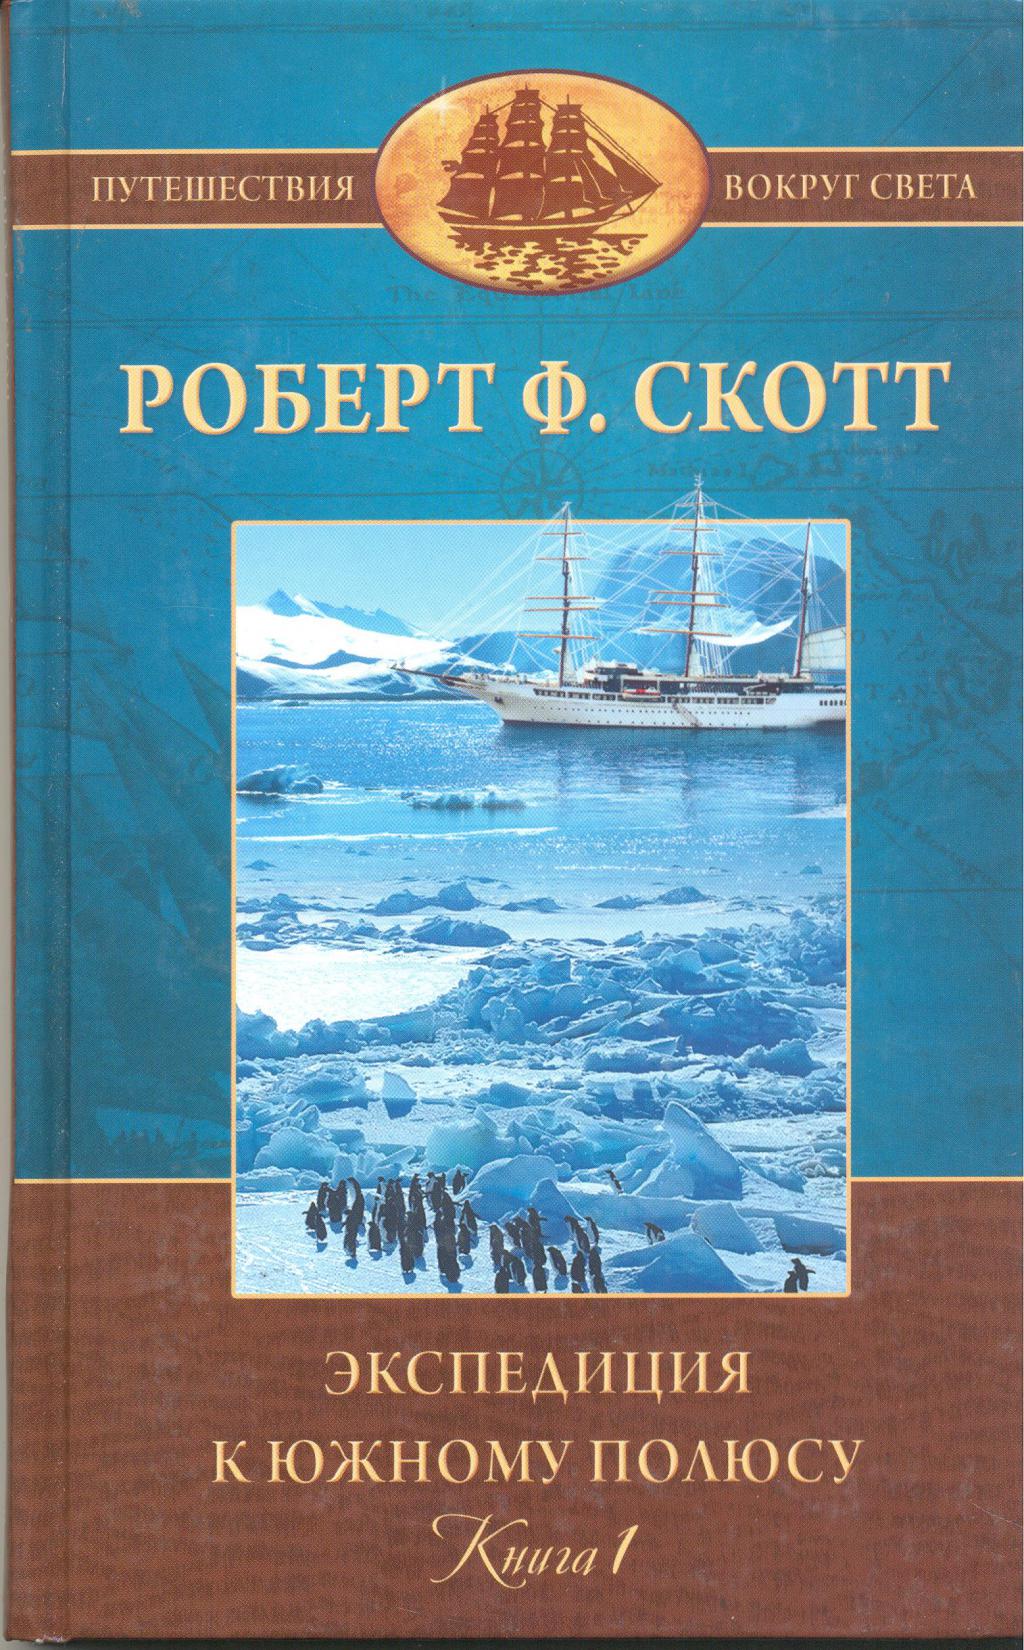 Экспедиция 2 книга. Экспедиция Скотта 1912. 1912 Год Экспедиция Скотта на Южный полюс.